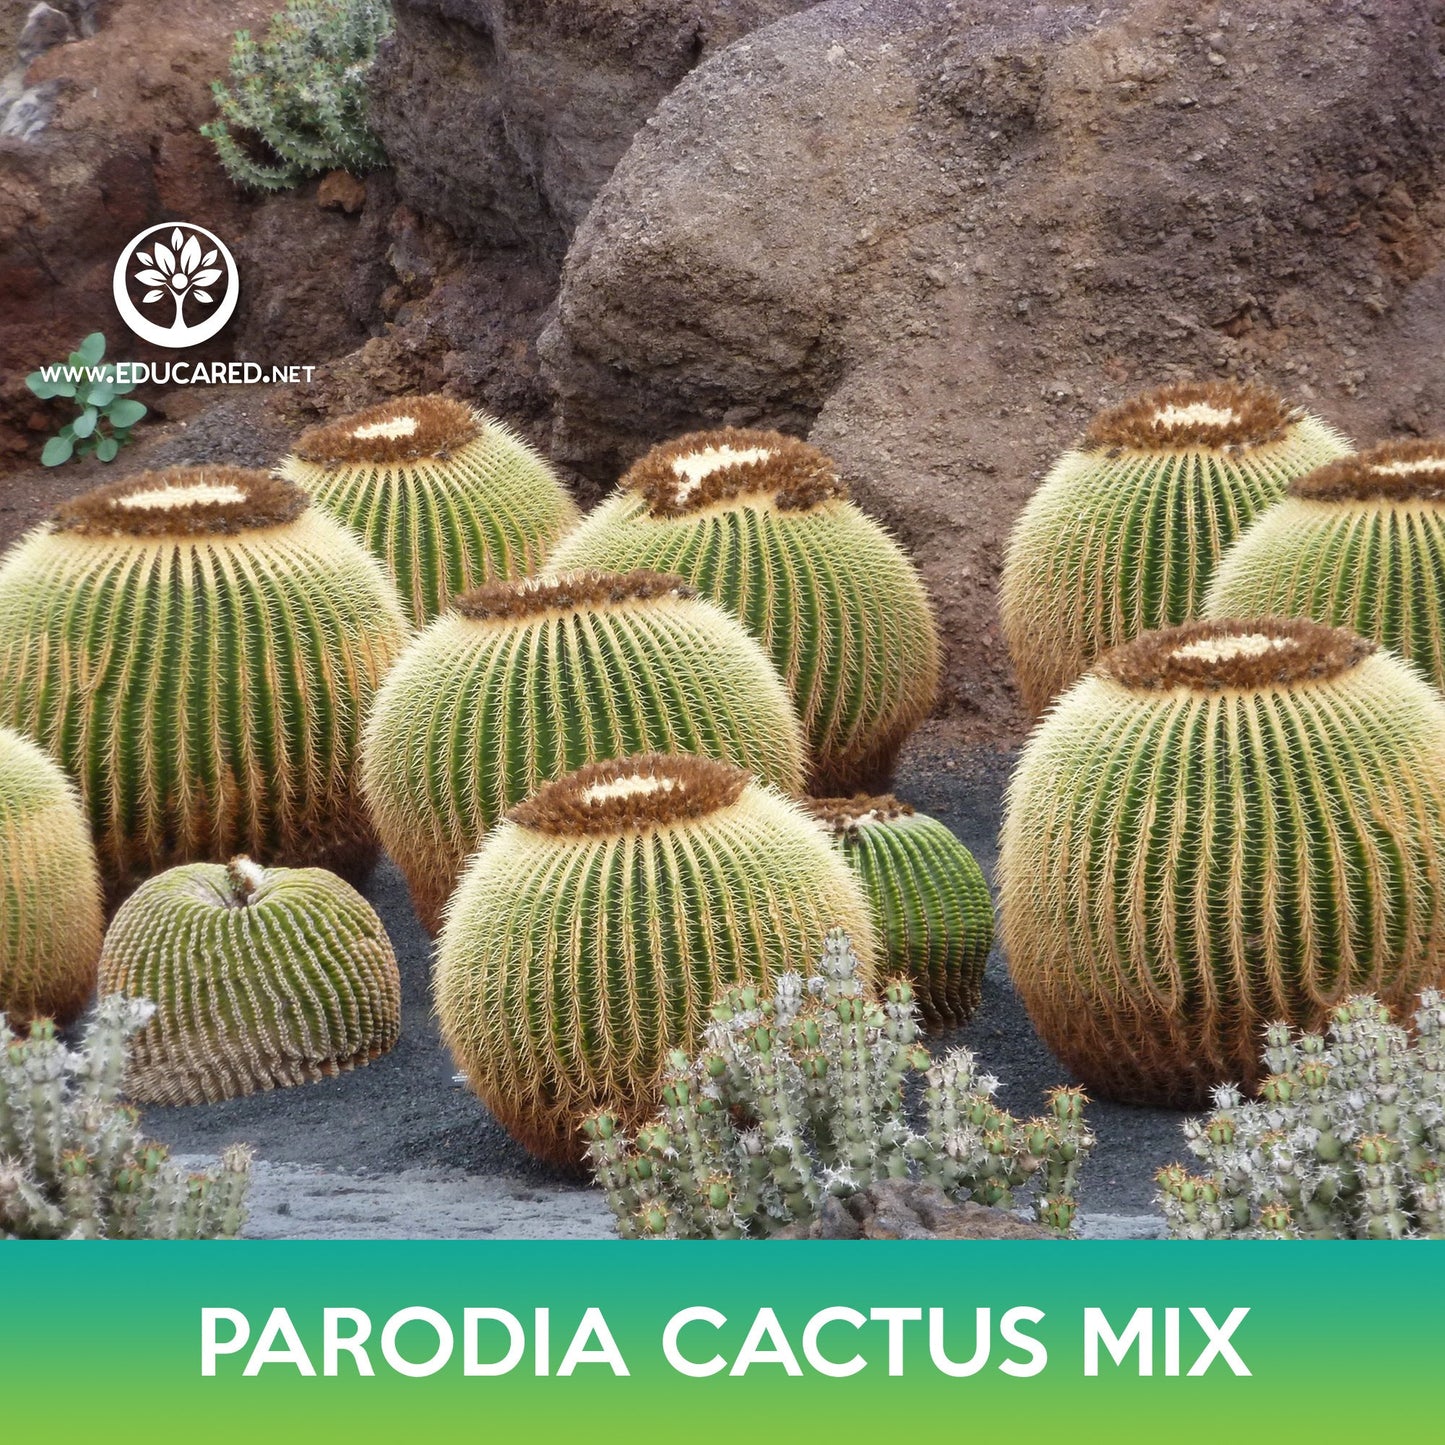 Parodia Cactus Mix Seeds